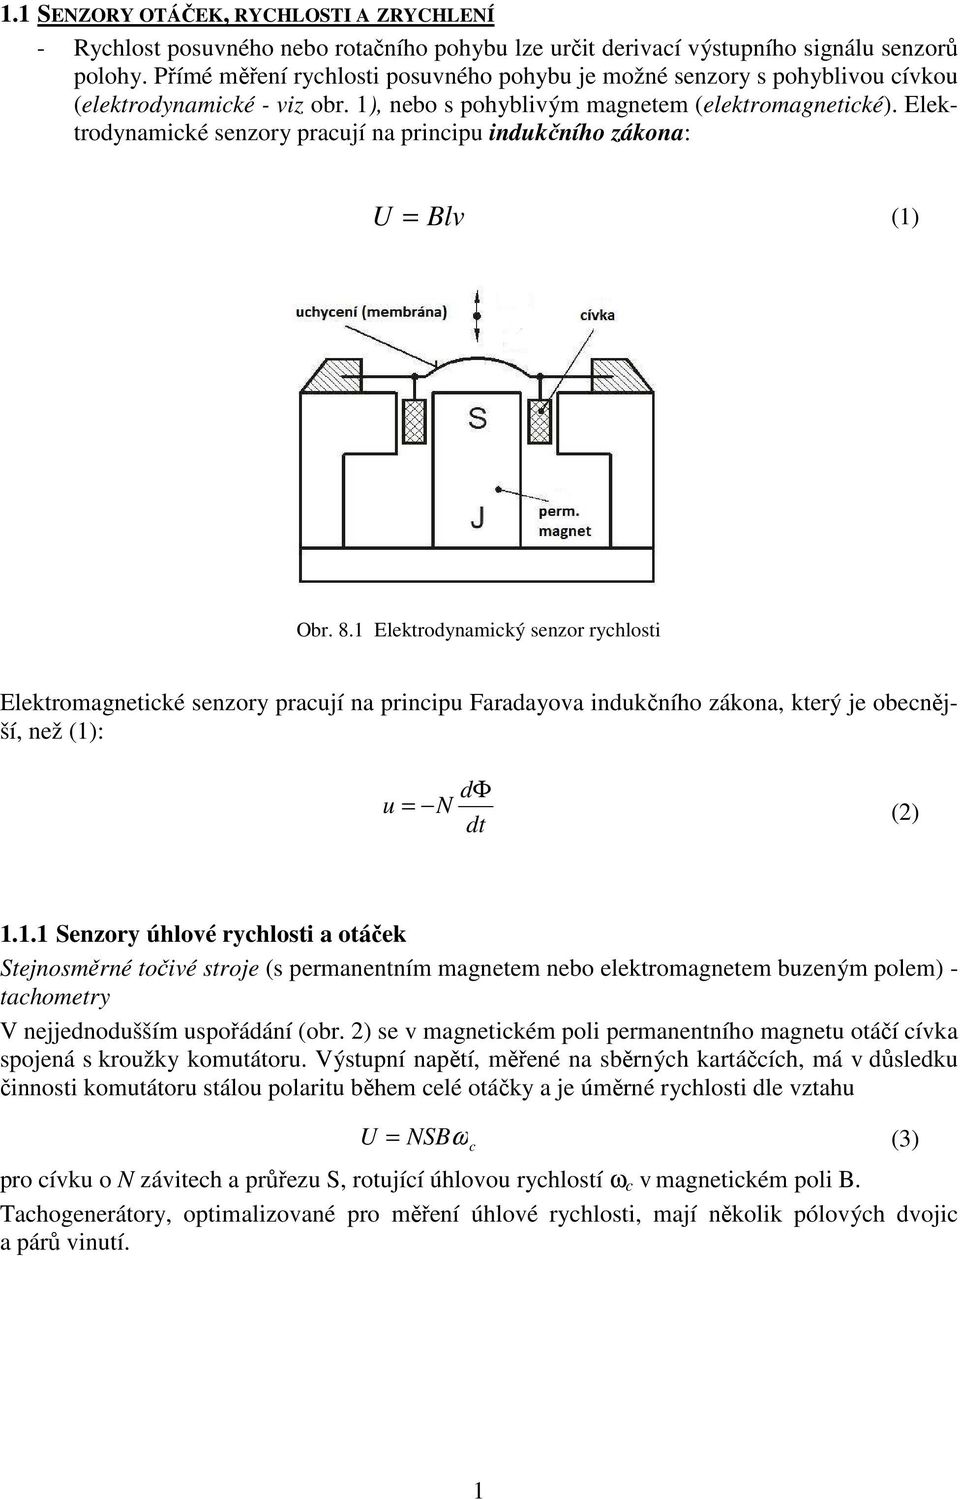 Elektrodynamické senzory pracují na principu indukčního zákona: U = Blv (1) Obr. 8.